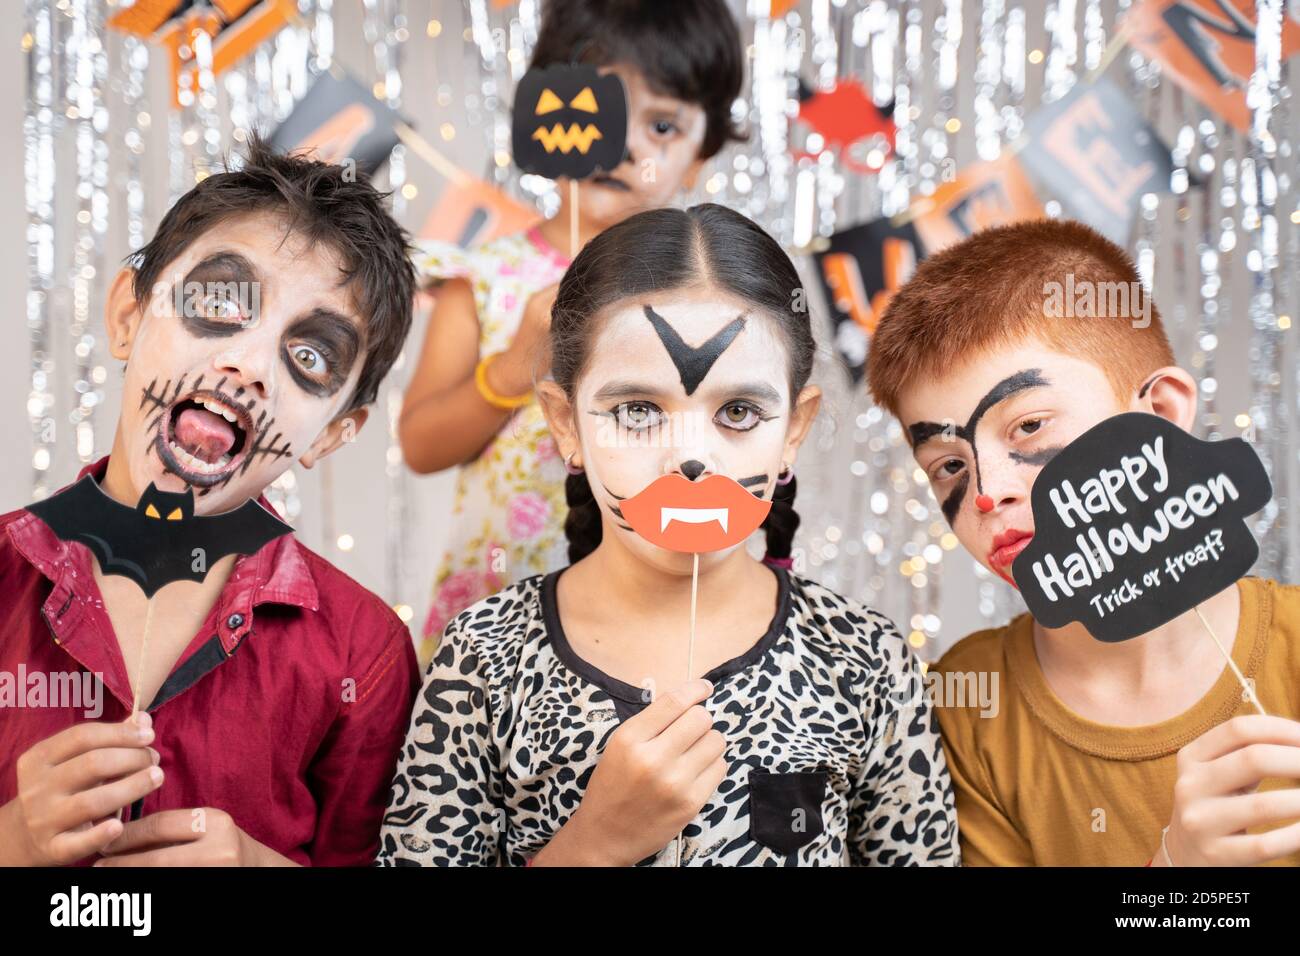 Gruppe von Kindern in Halloween-Kostümen machen gestikulierend beängstigend oder gruselige Gesichter, indem sie Stand Sprops auf dekorierten Hintergrund halten, indem sie in die Kamera schauen. Stockfoto